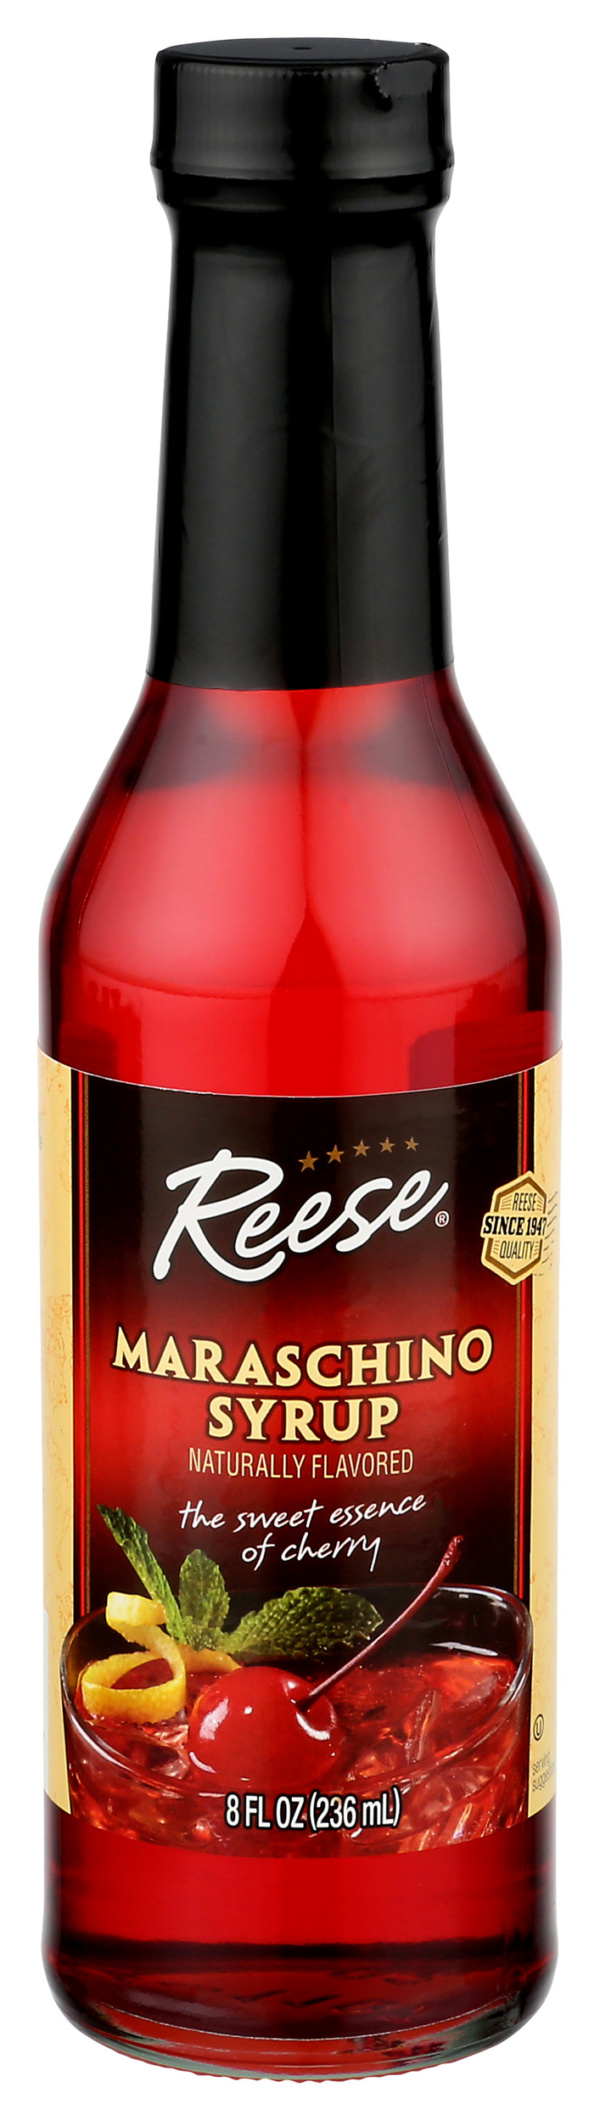 Maraschino Syrup